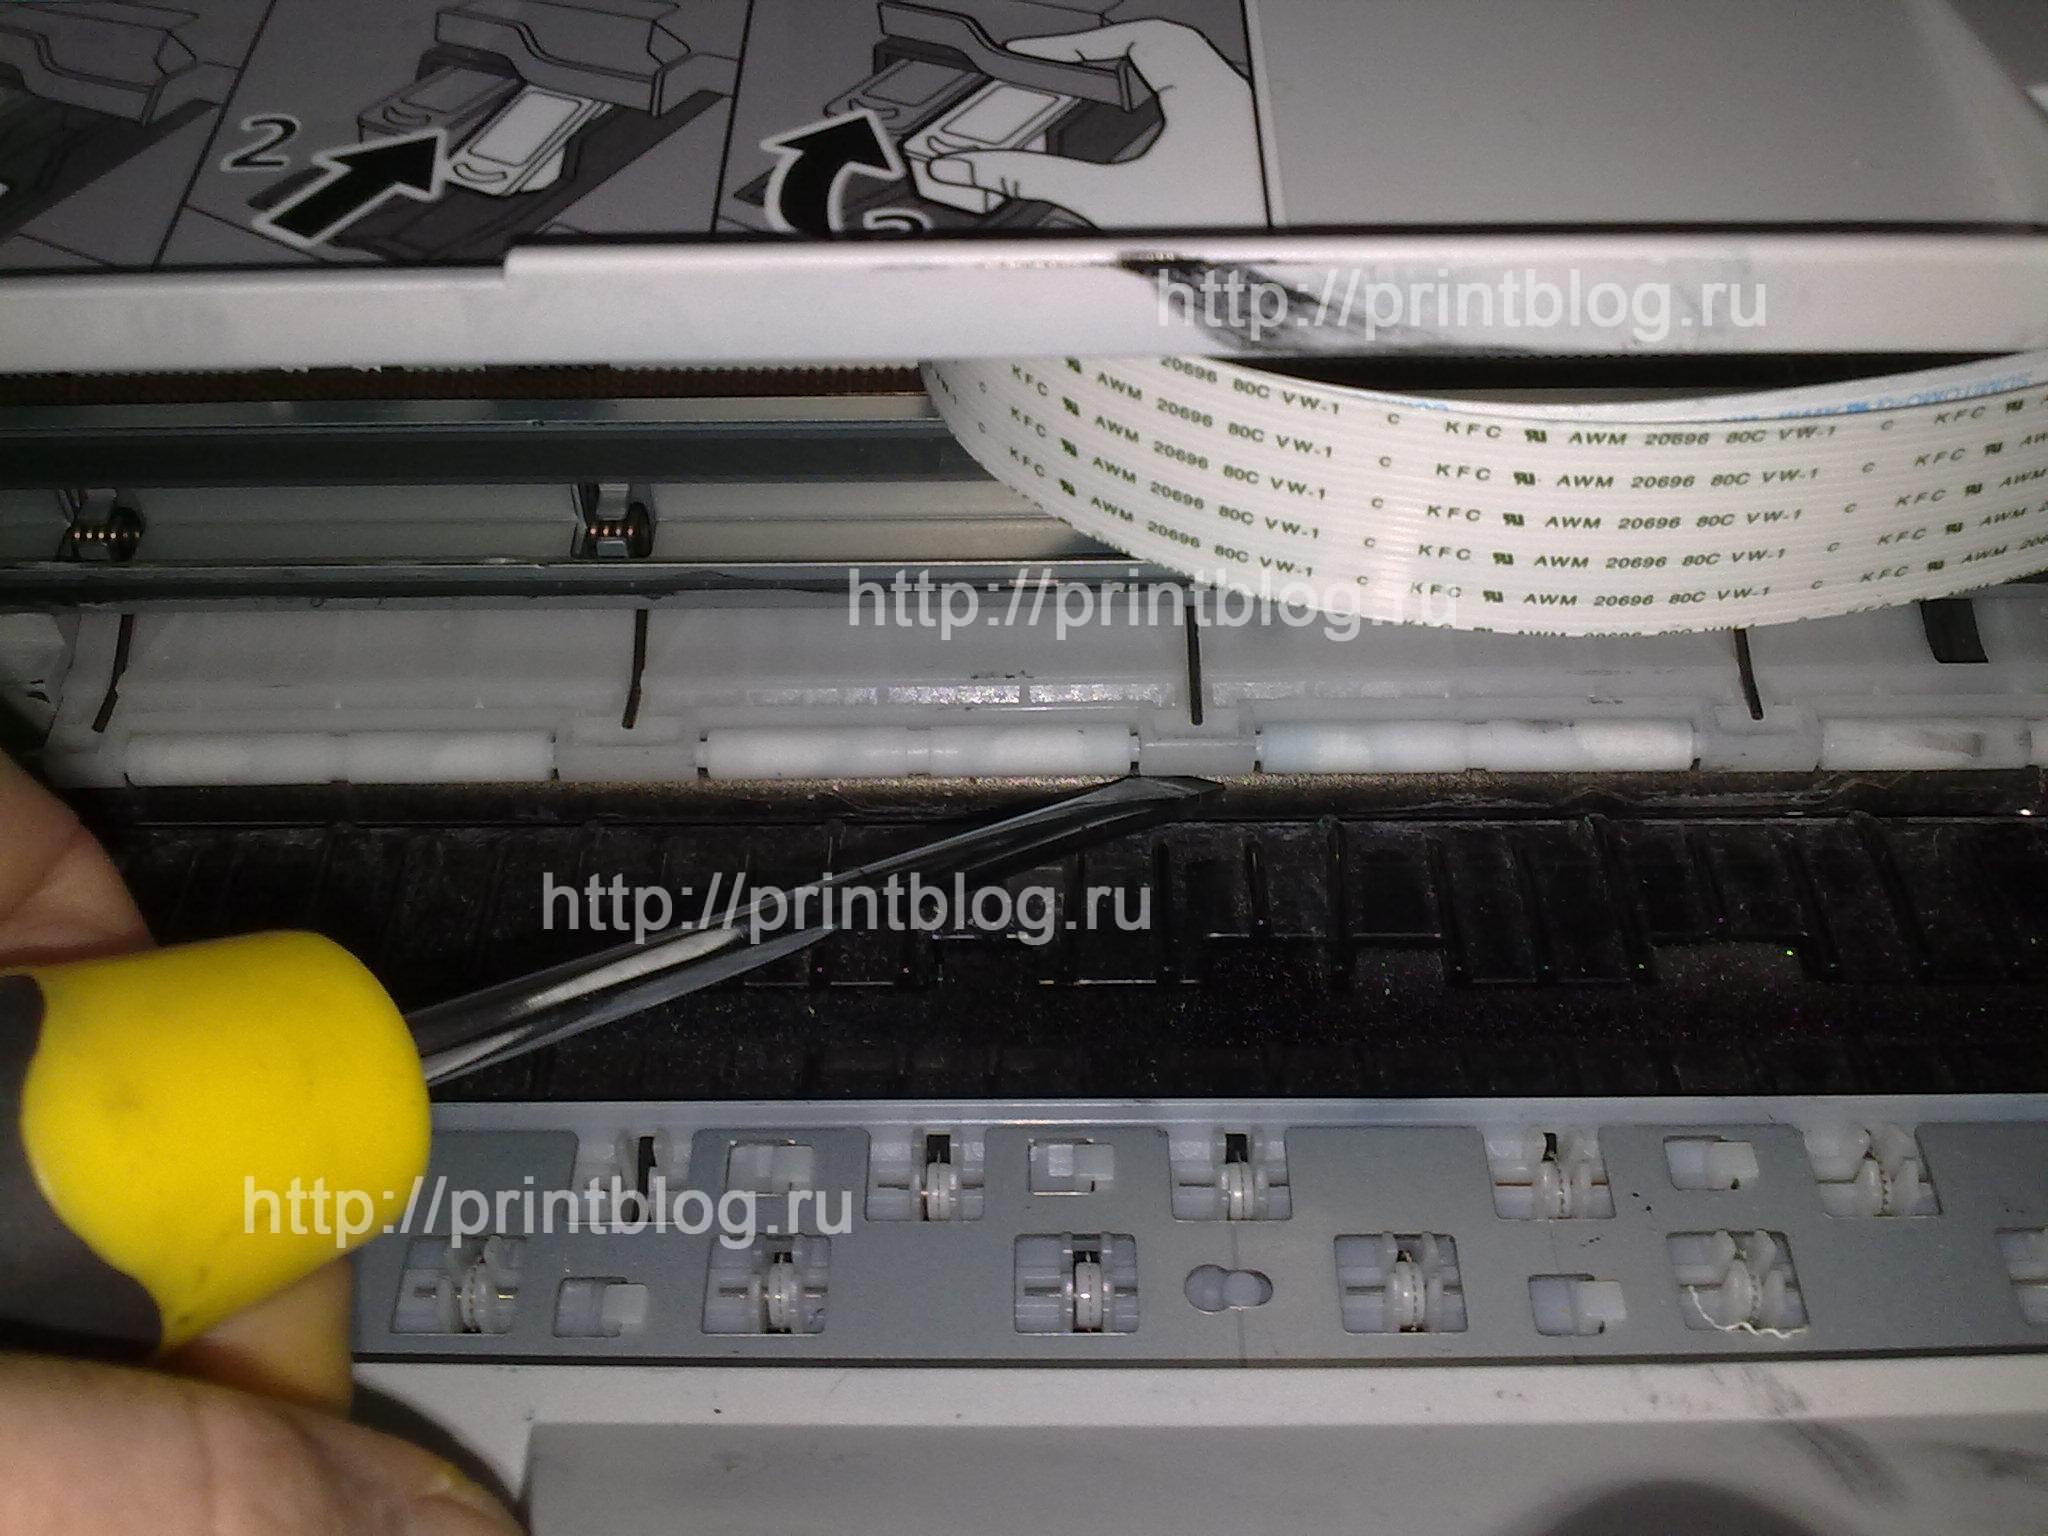 Ремонт струйных принтеров в Москве на дому или в Вашем офисе